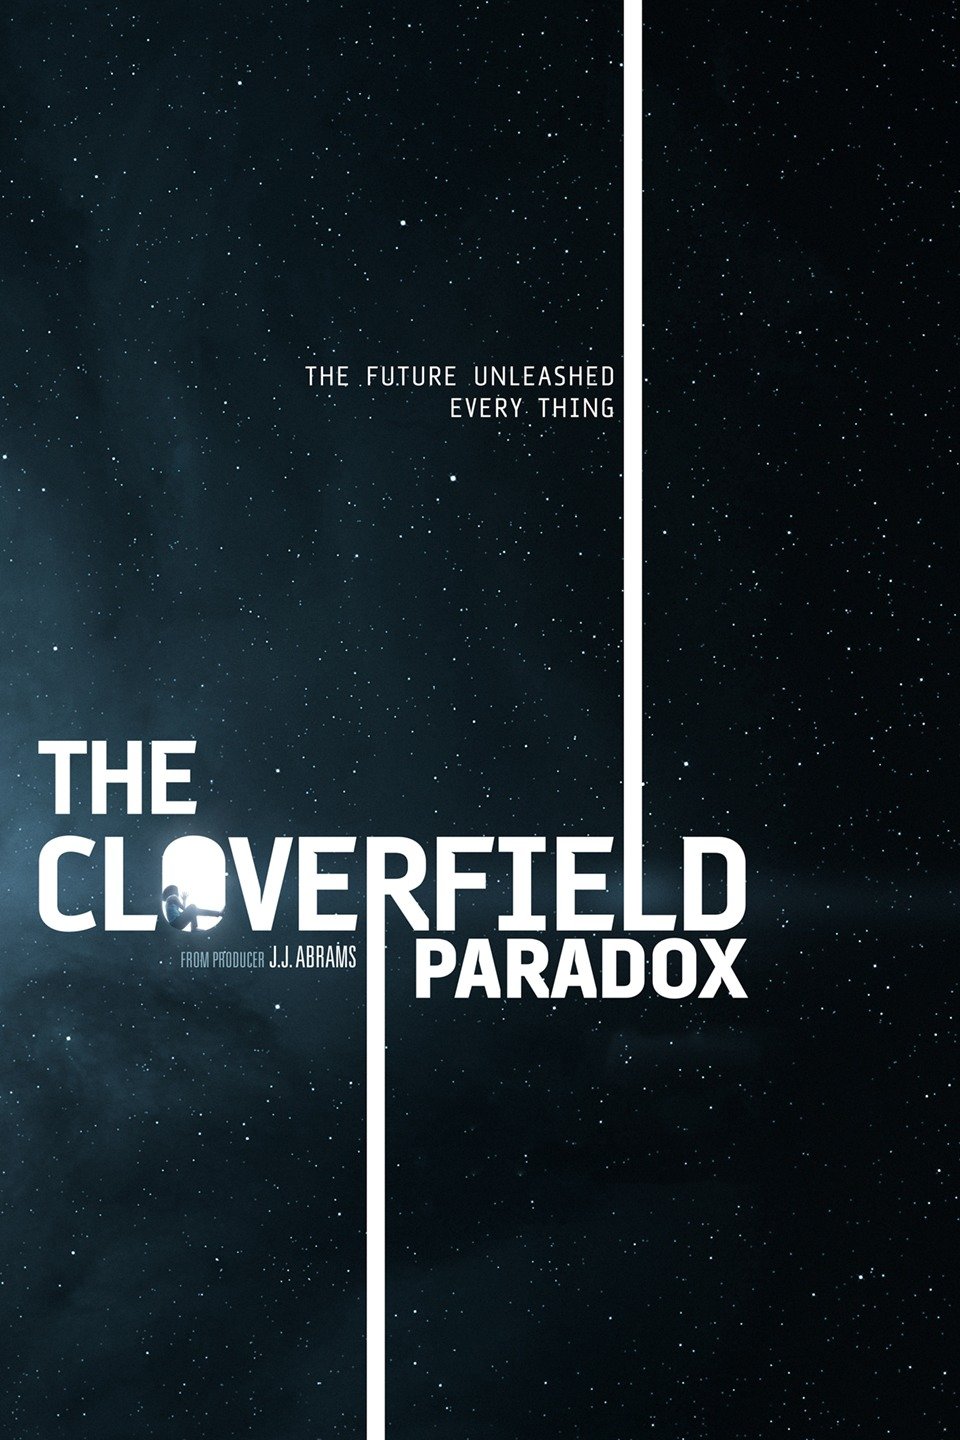 [ฝรั่ง] The Cloverfield Paradox (2018) [1080p] [พากย์อังกฤษ 5.1] [Soundtrack + บรรยายไทย] [เสียงอังกฤษ + ซับไทย] [Modified] [ONE2UP]